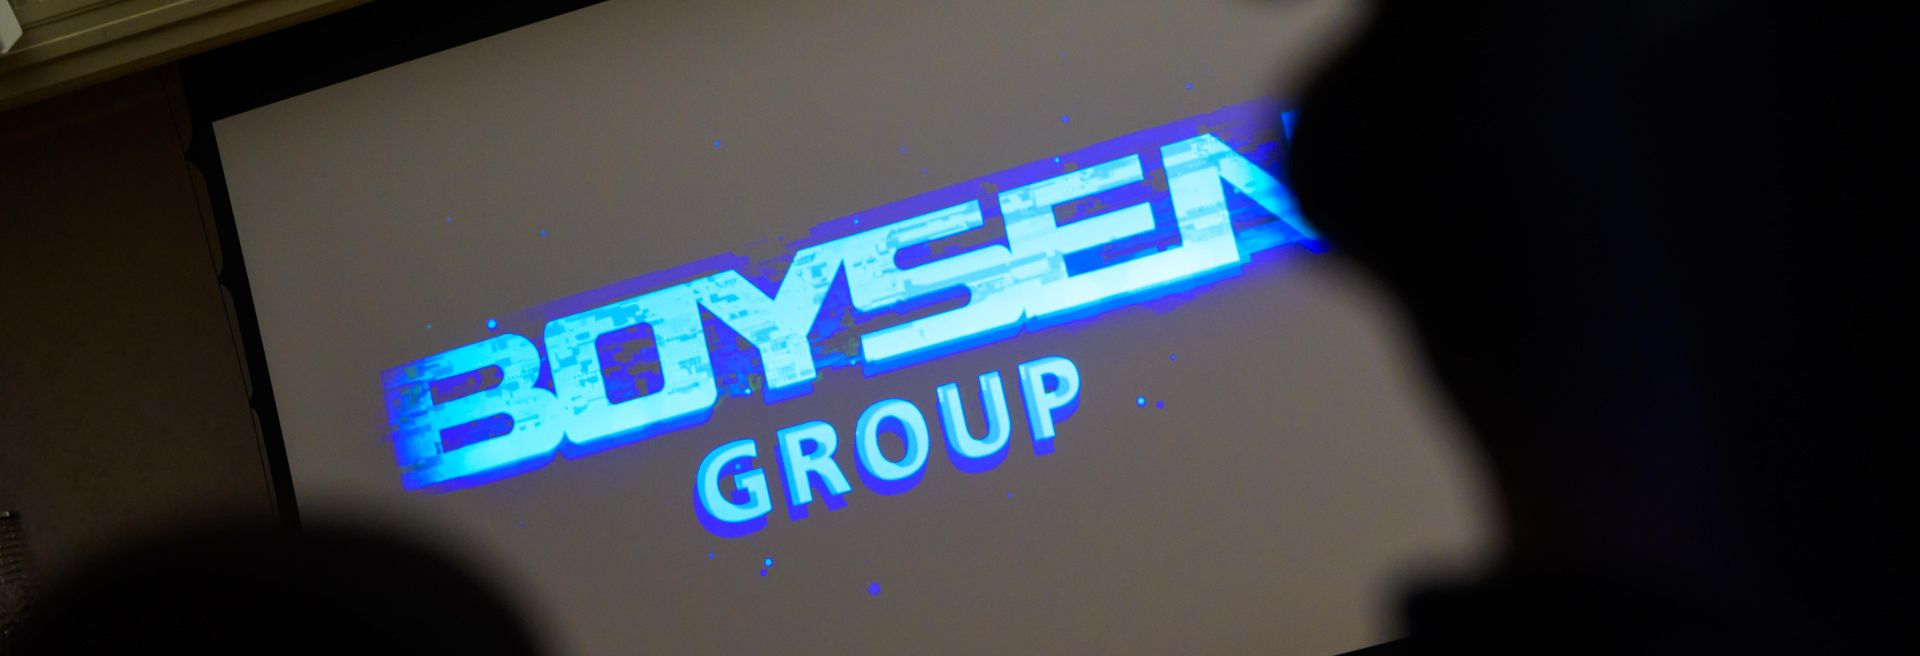 A Boysen új üzeme kulcsfontosságú mérföldkő az elektromos átálláshoz való alkalmazkodásban